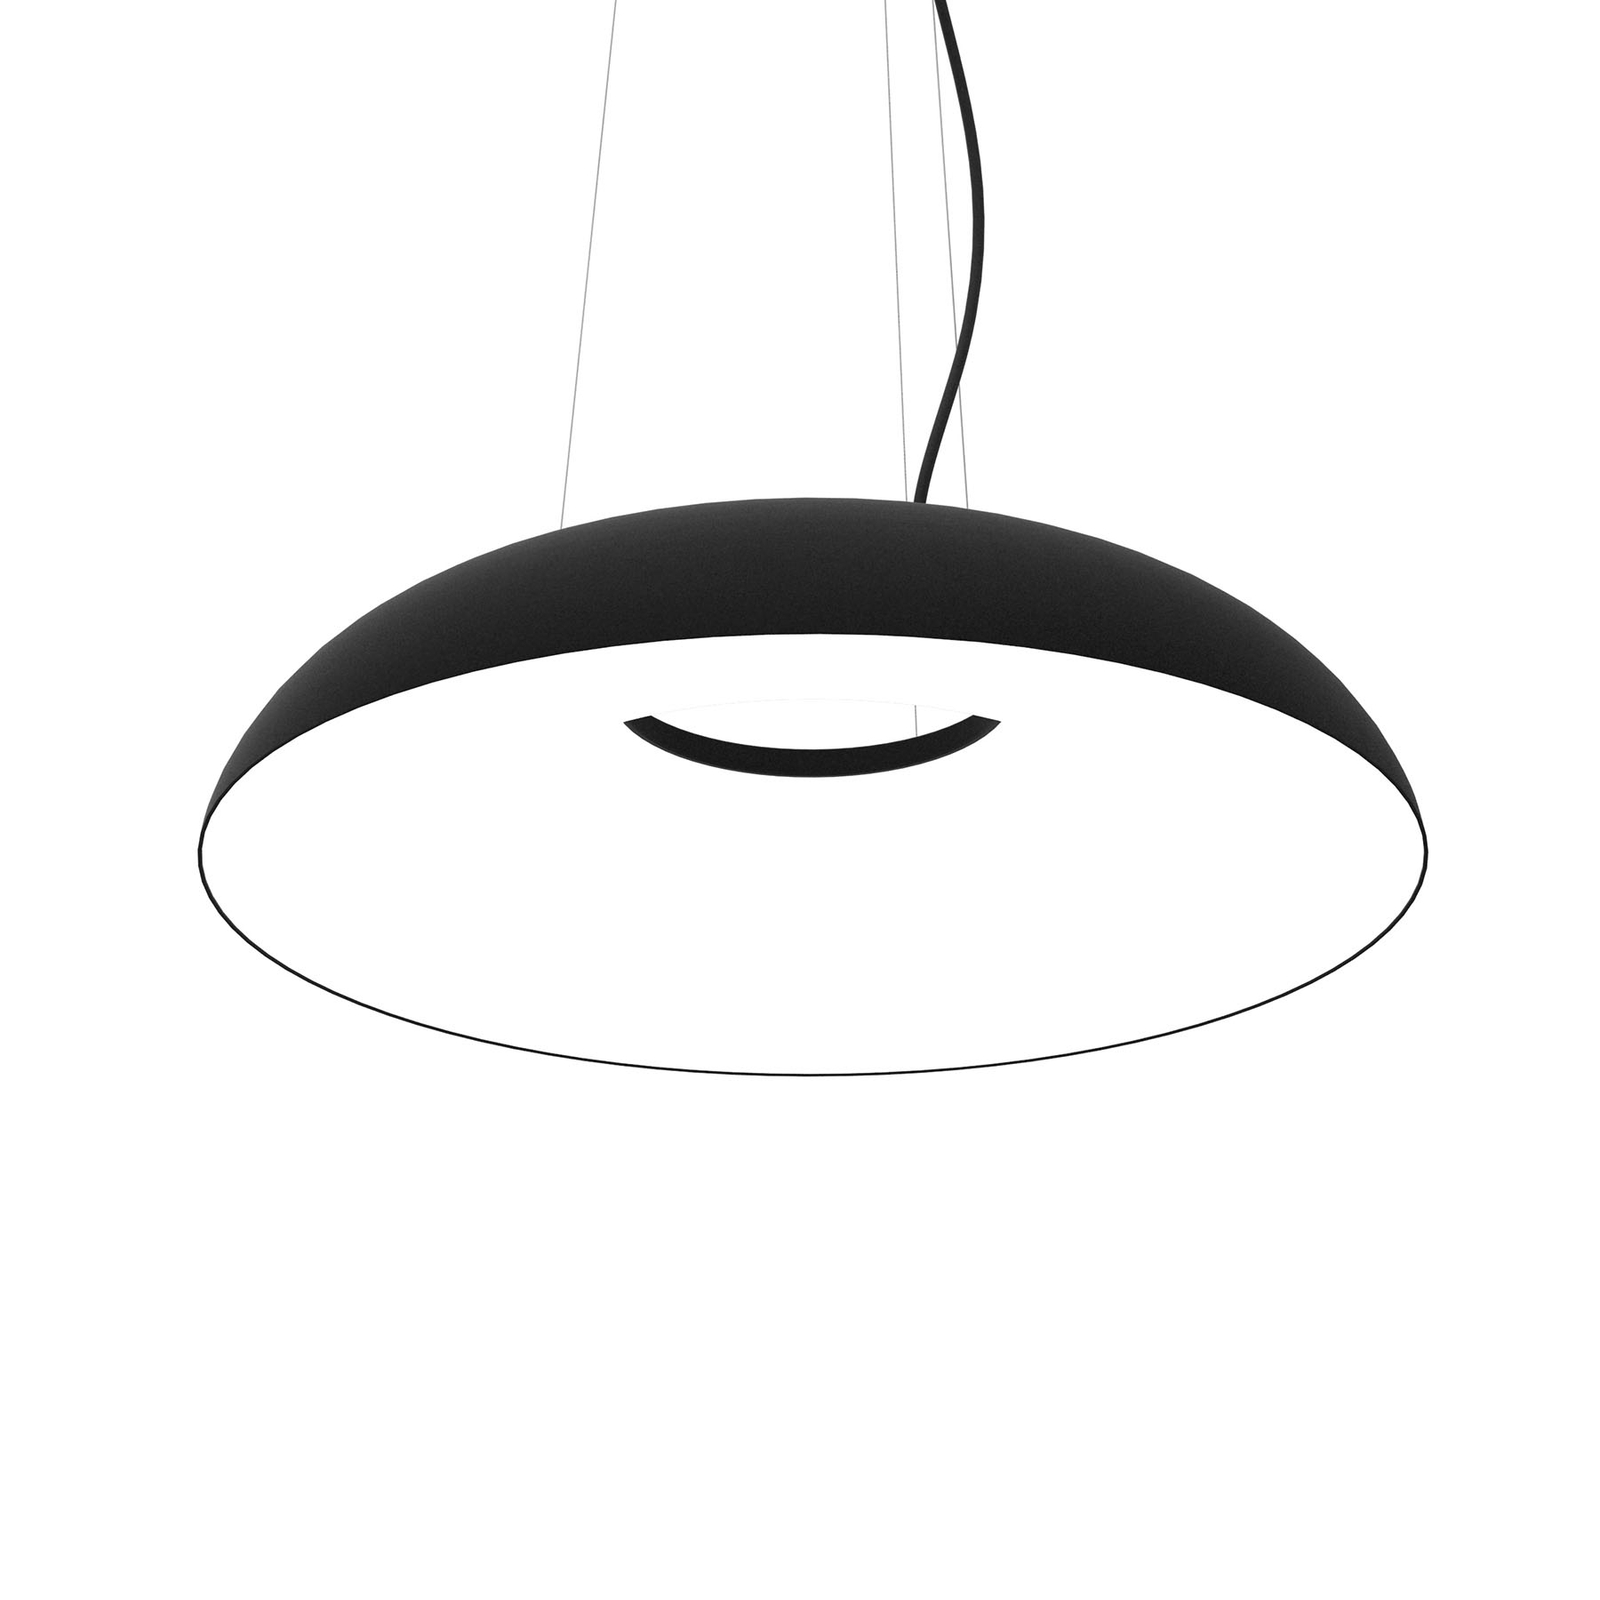 Martinelli Luce Maggiolone hanglamp 930 85cm zwart